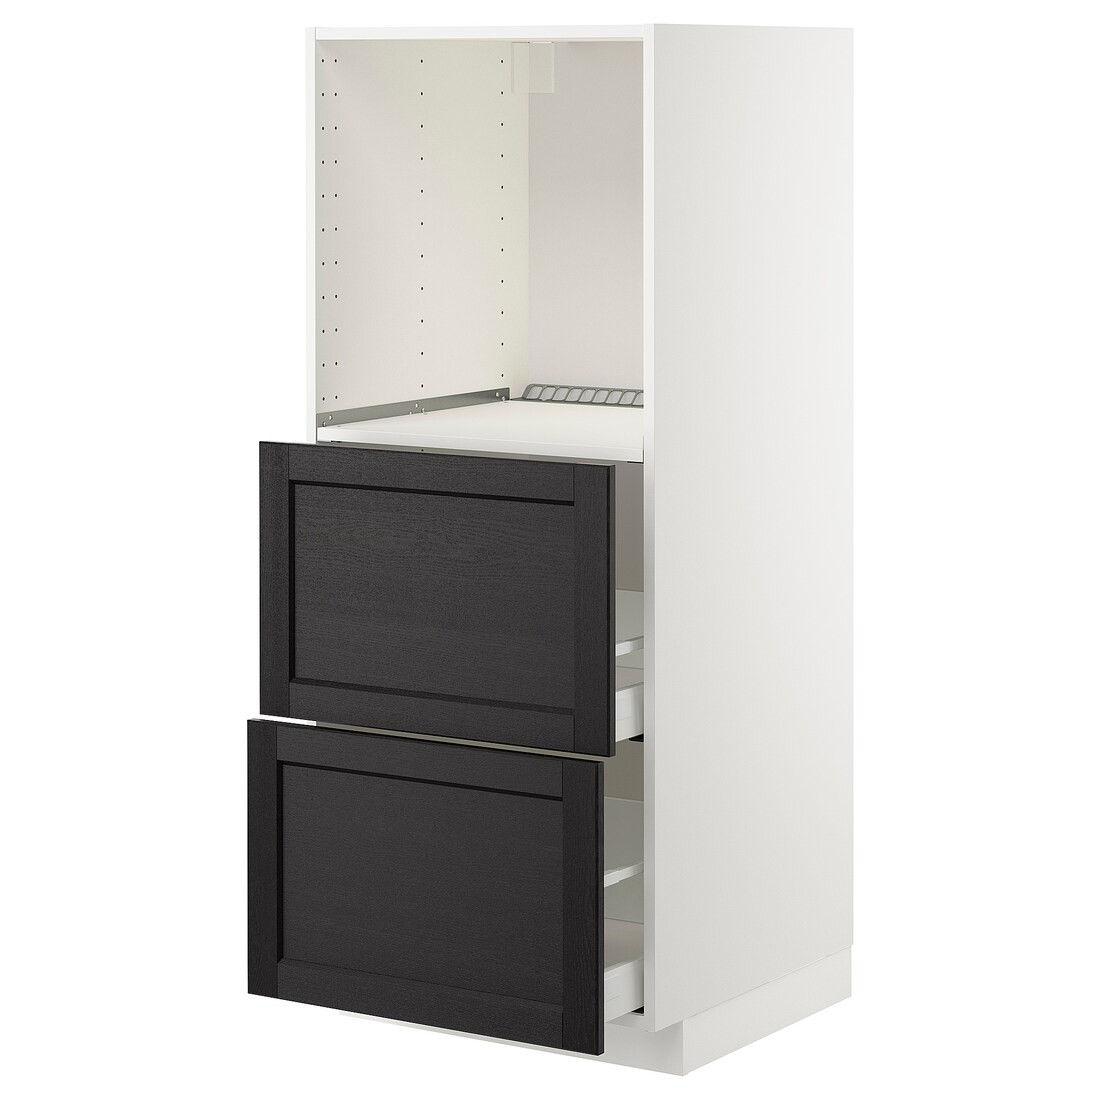 IKEA METOD МЕТОД / MAXIMERA МАКСИМЕРА Высокий шкаф с 2 ящиками для духовки, белый / Lerhyttan черная морилка, 60x60x140 см 79257832 | 792.578.32